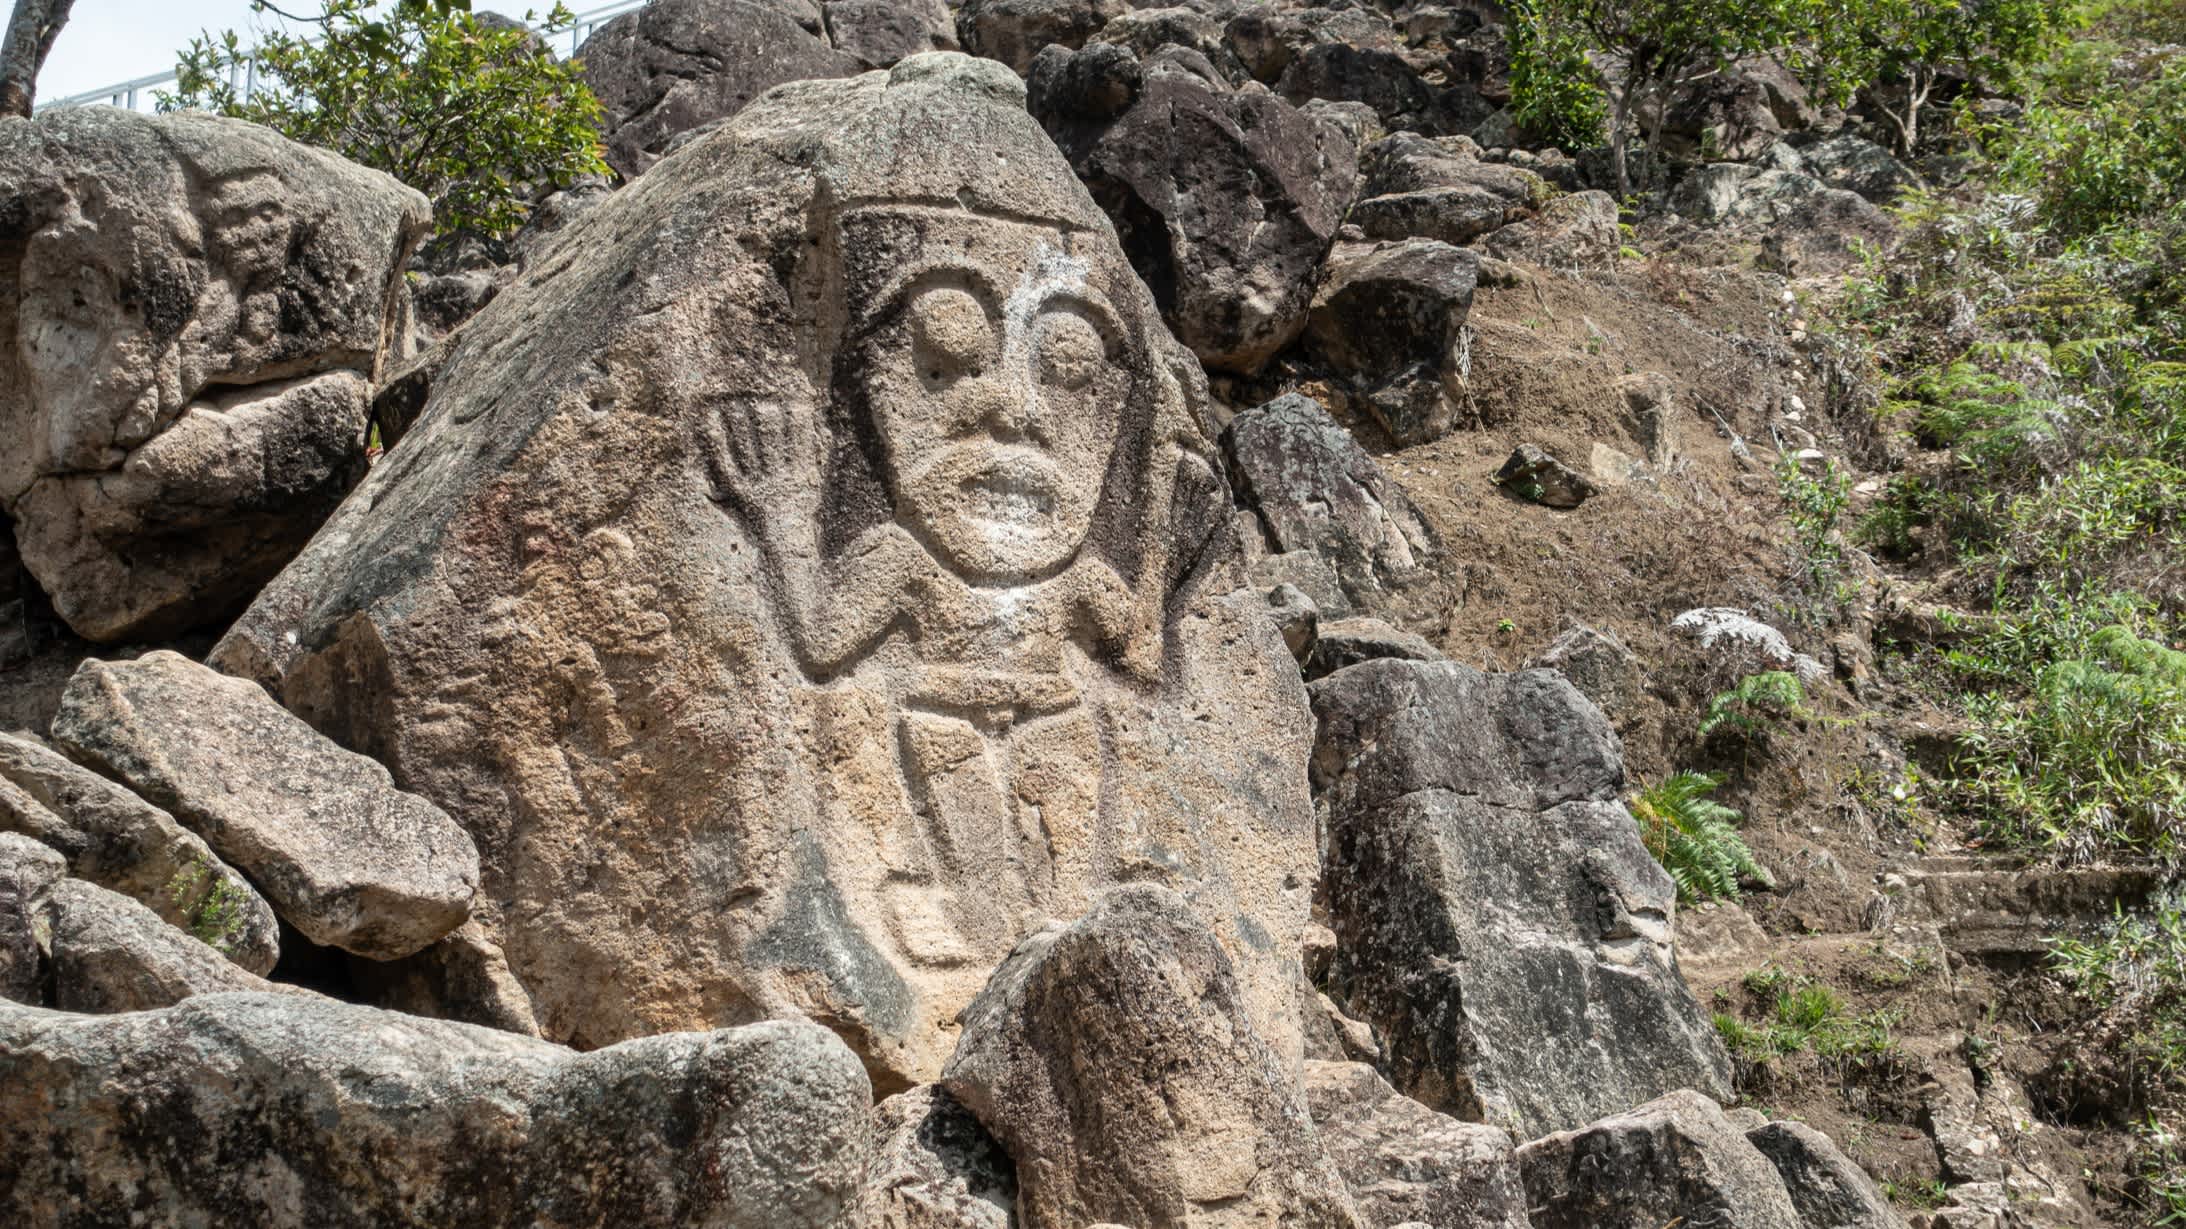 Der Archäologische Park San Agustín in der Nähe der Stadt San Agustín im Departement Huila in Kolumbien.